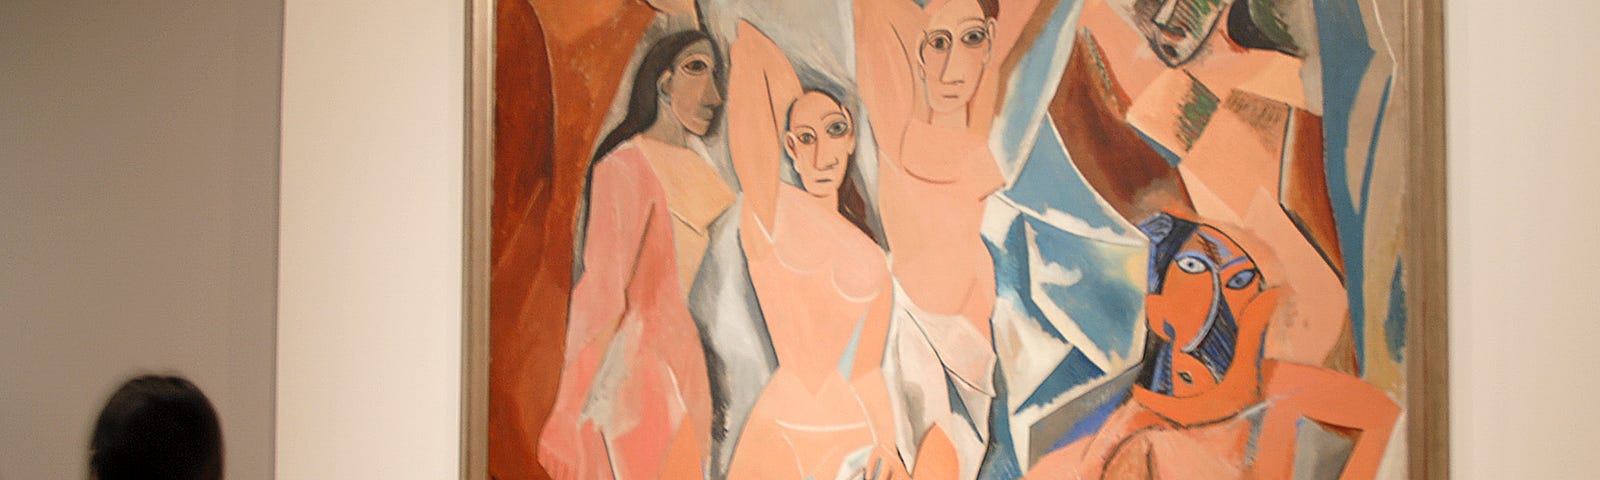 Les Demoiselles D’Avignon by Pablo Picasso at the MET